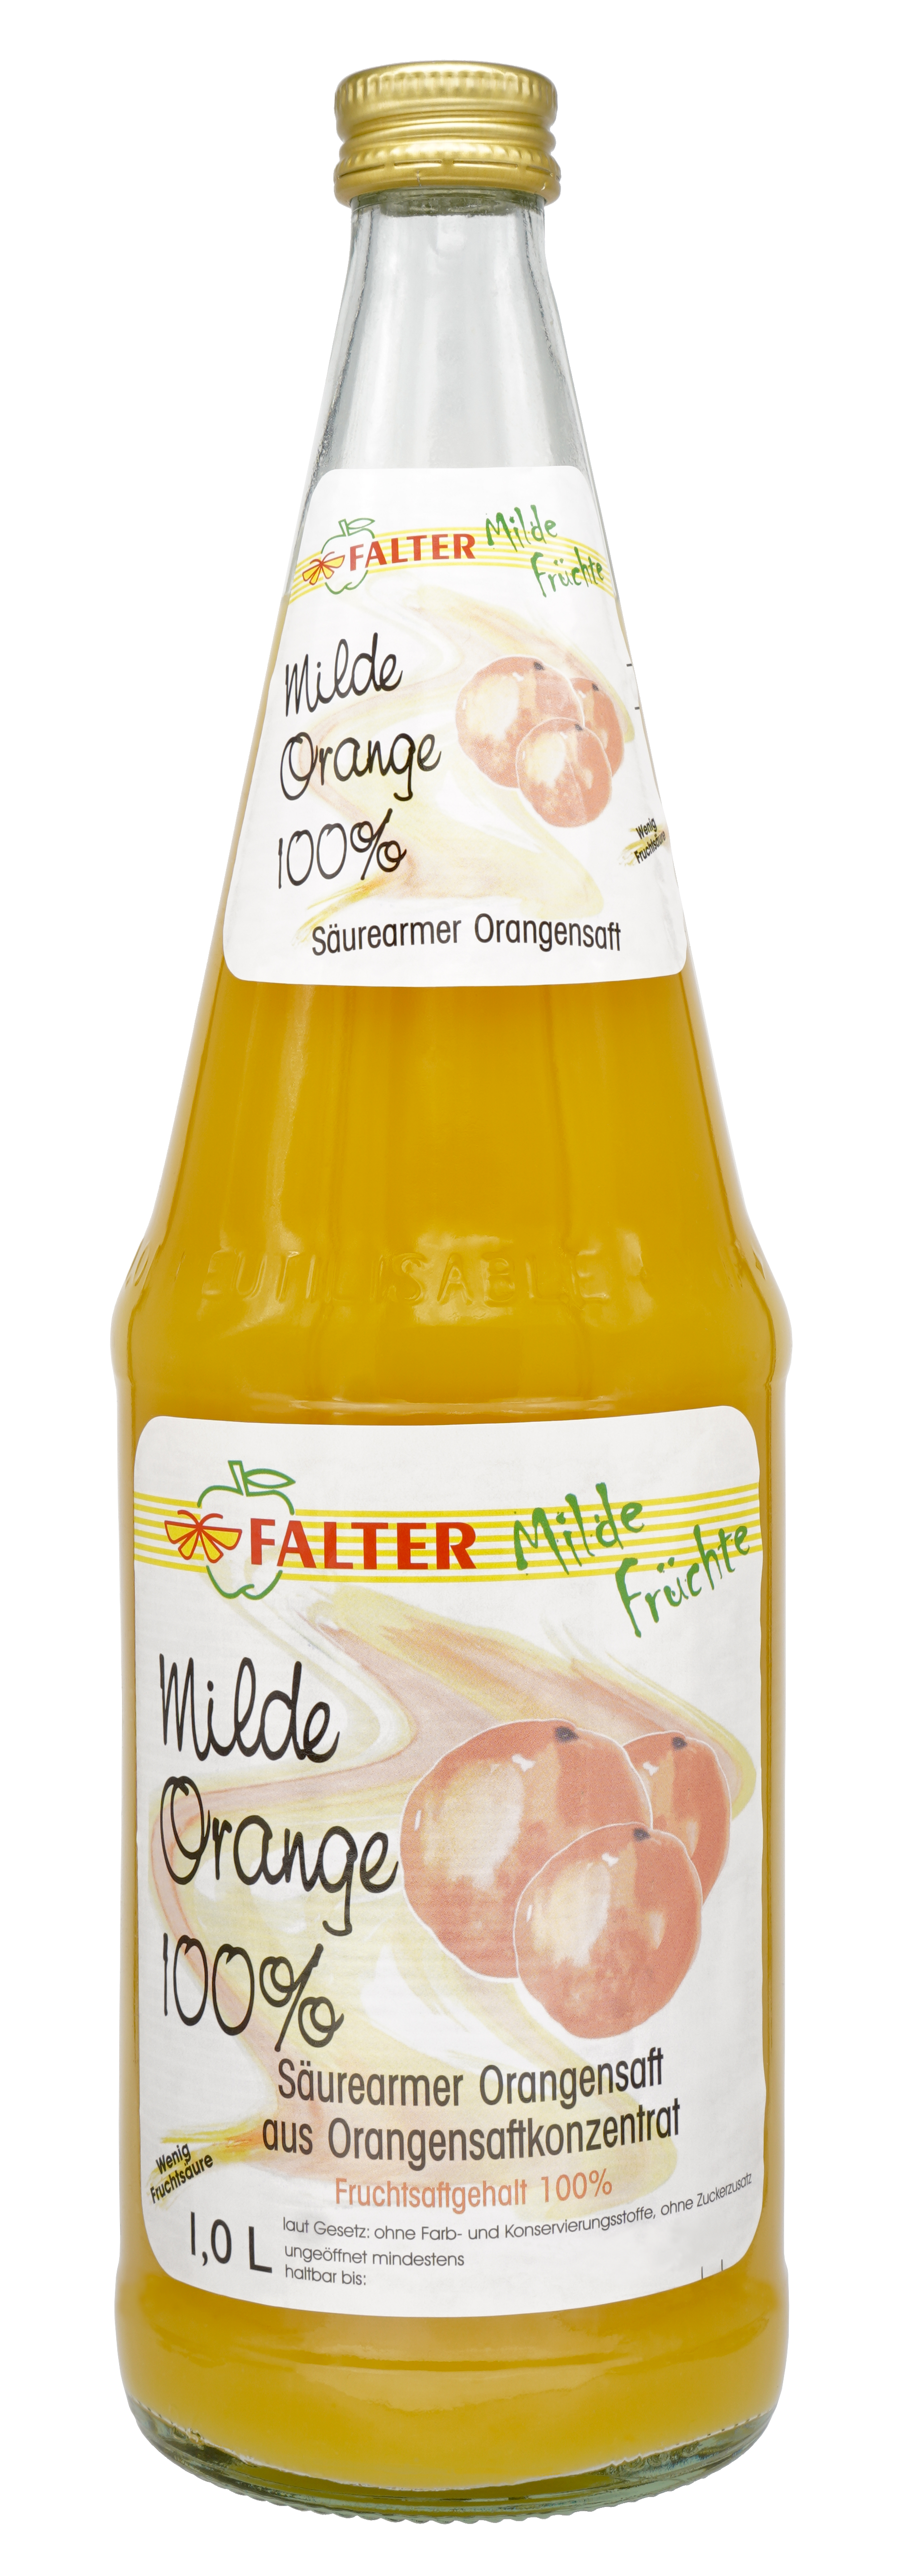 Falter Milde Orange 100% 6 x 1l